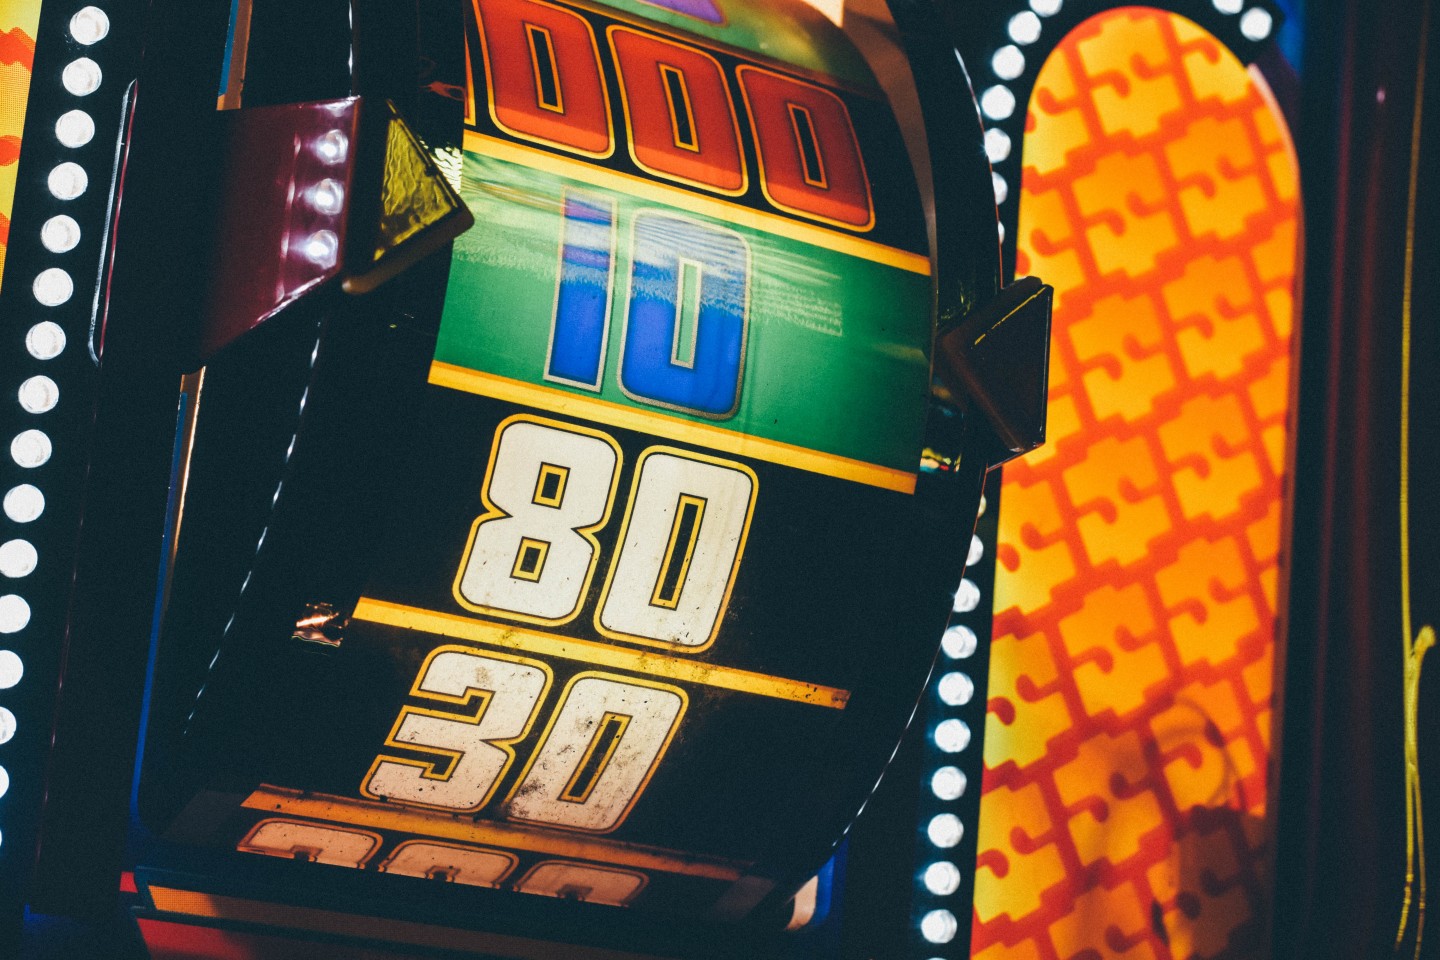 Capitalismo de casino “ou serão apenas idiotas?” - Jornal Económico Novembro 2019